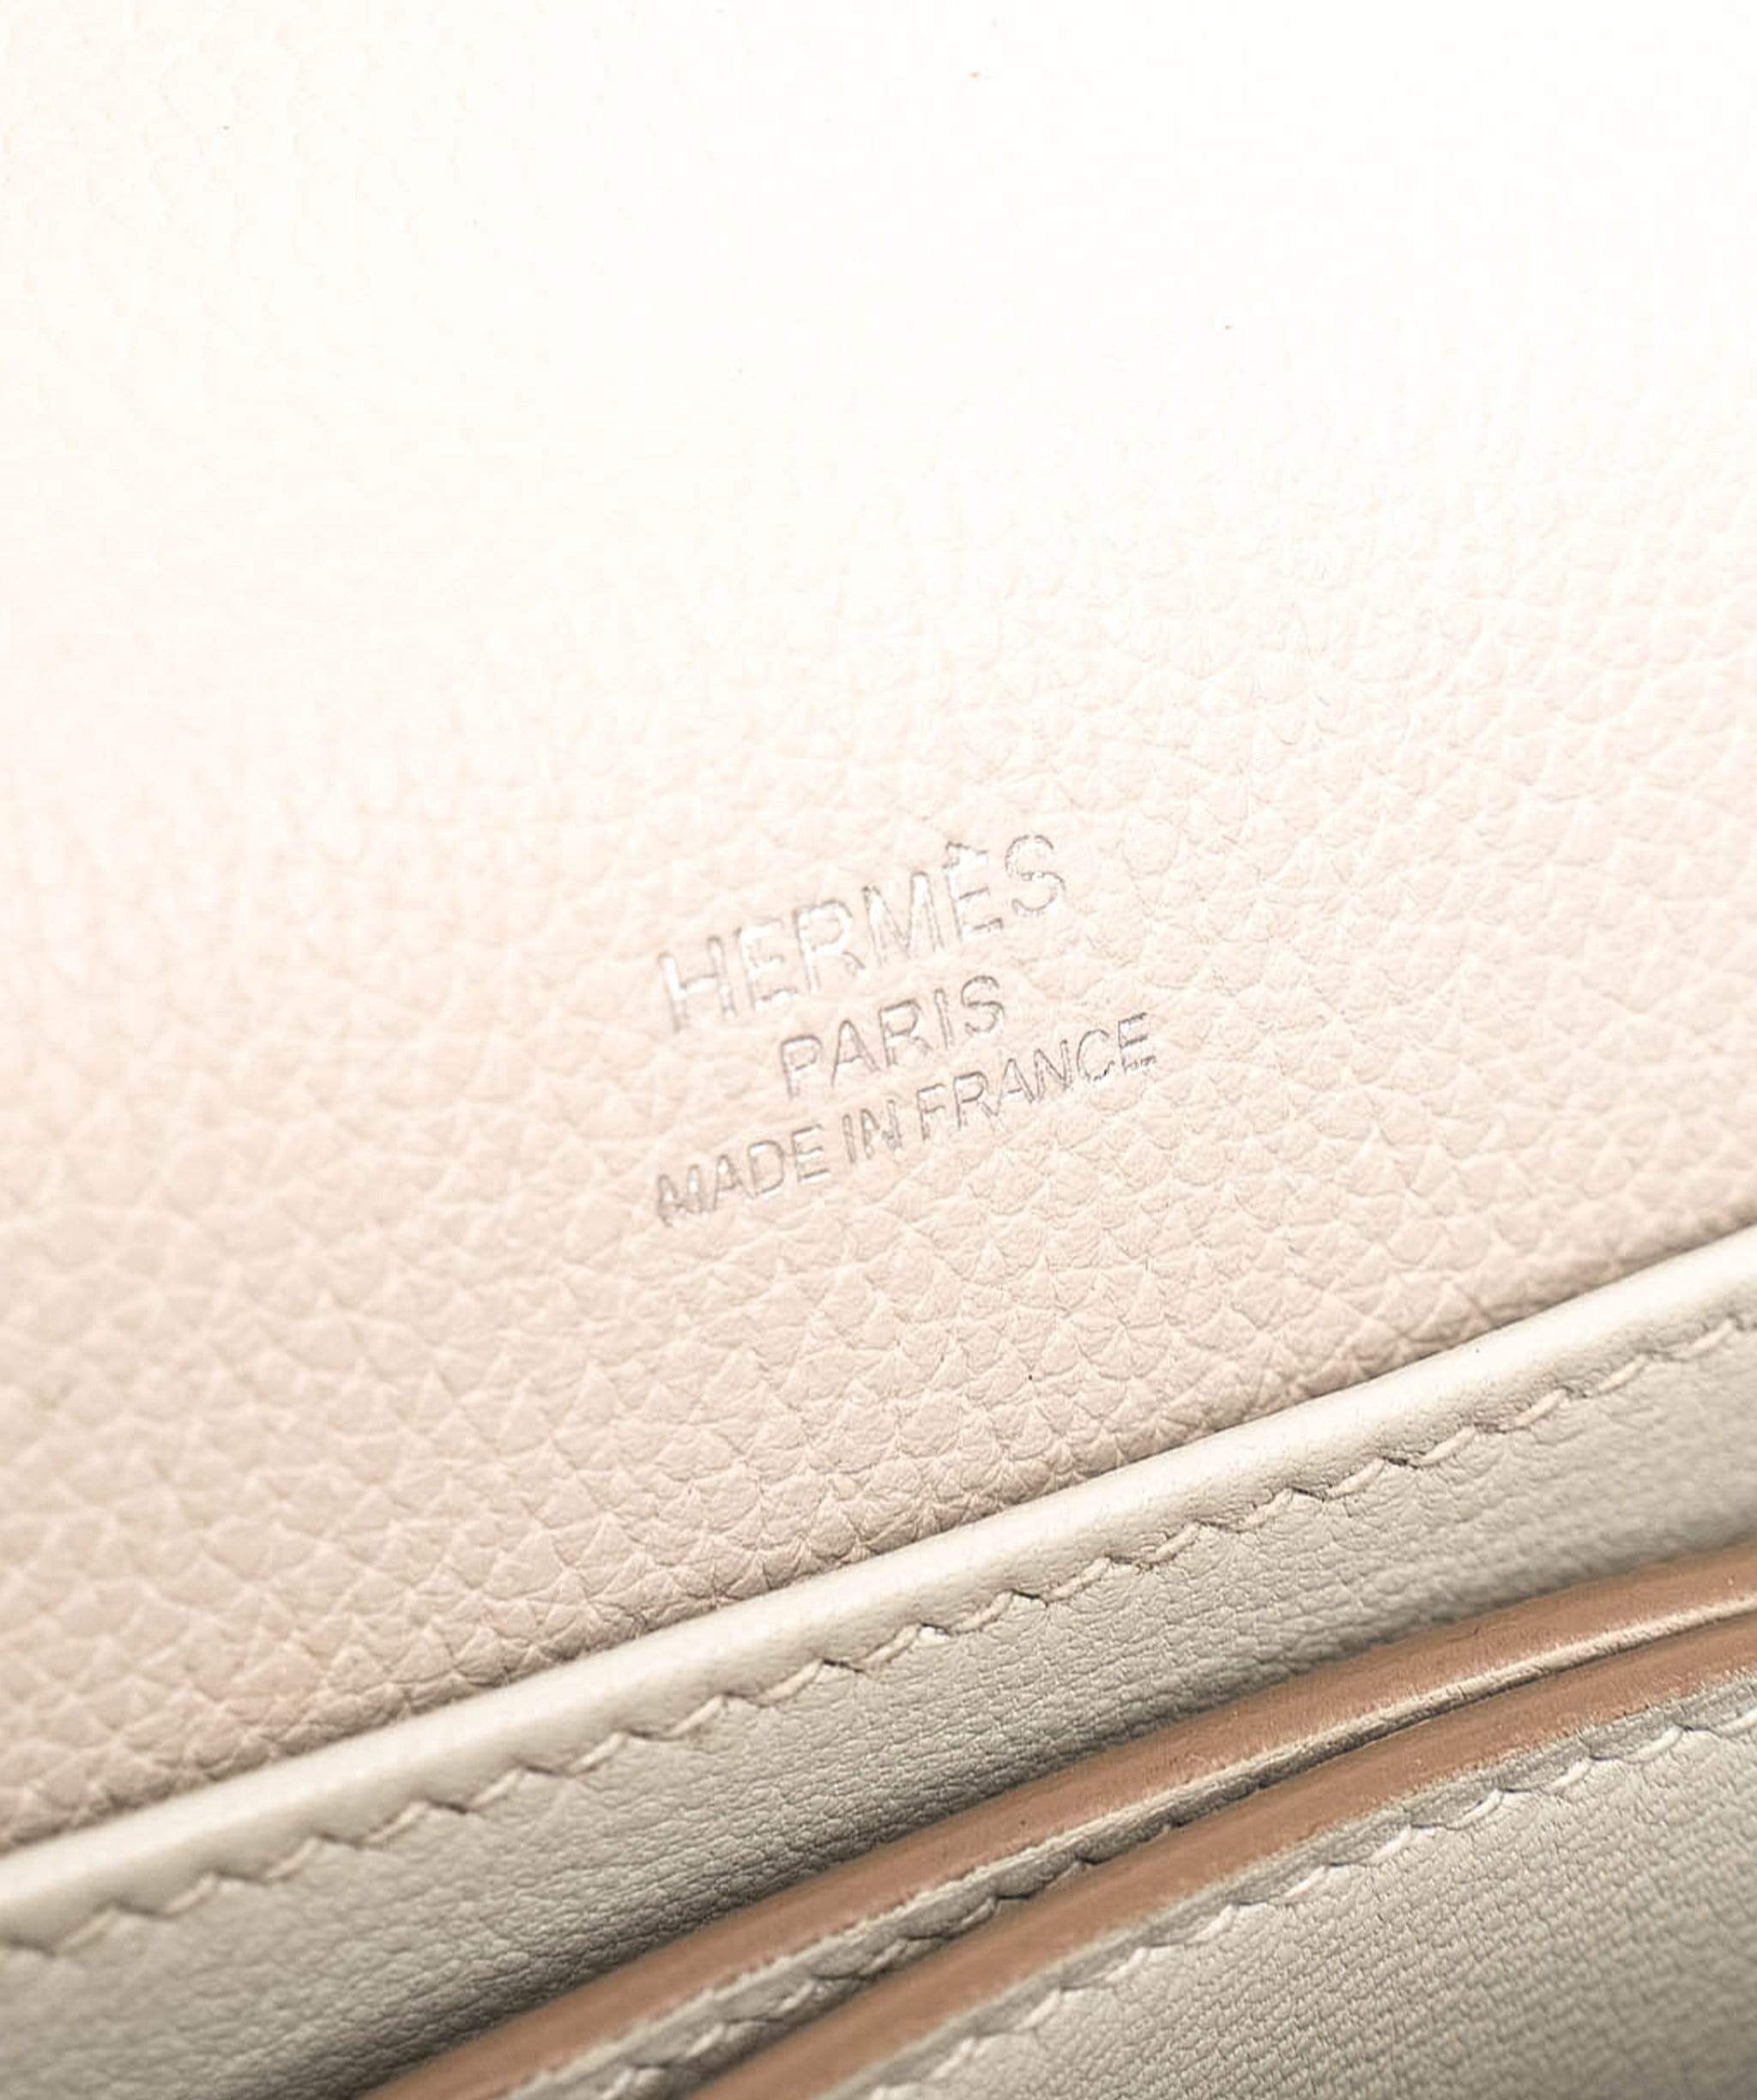 Vivienne Westwood Hermès Mini Roulis Gris Perle Bag - ADC1126